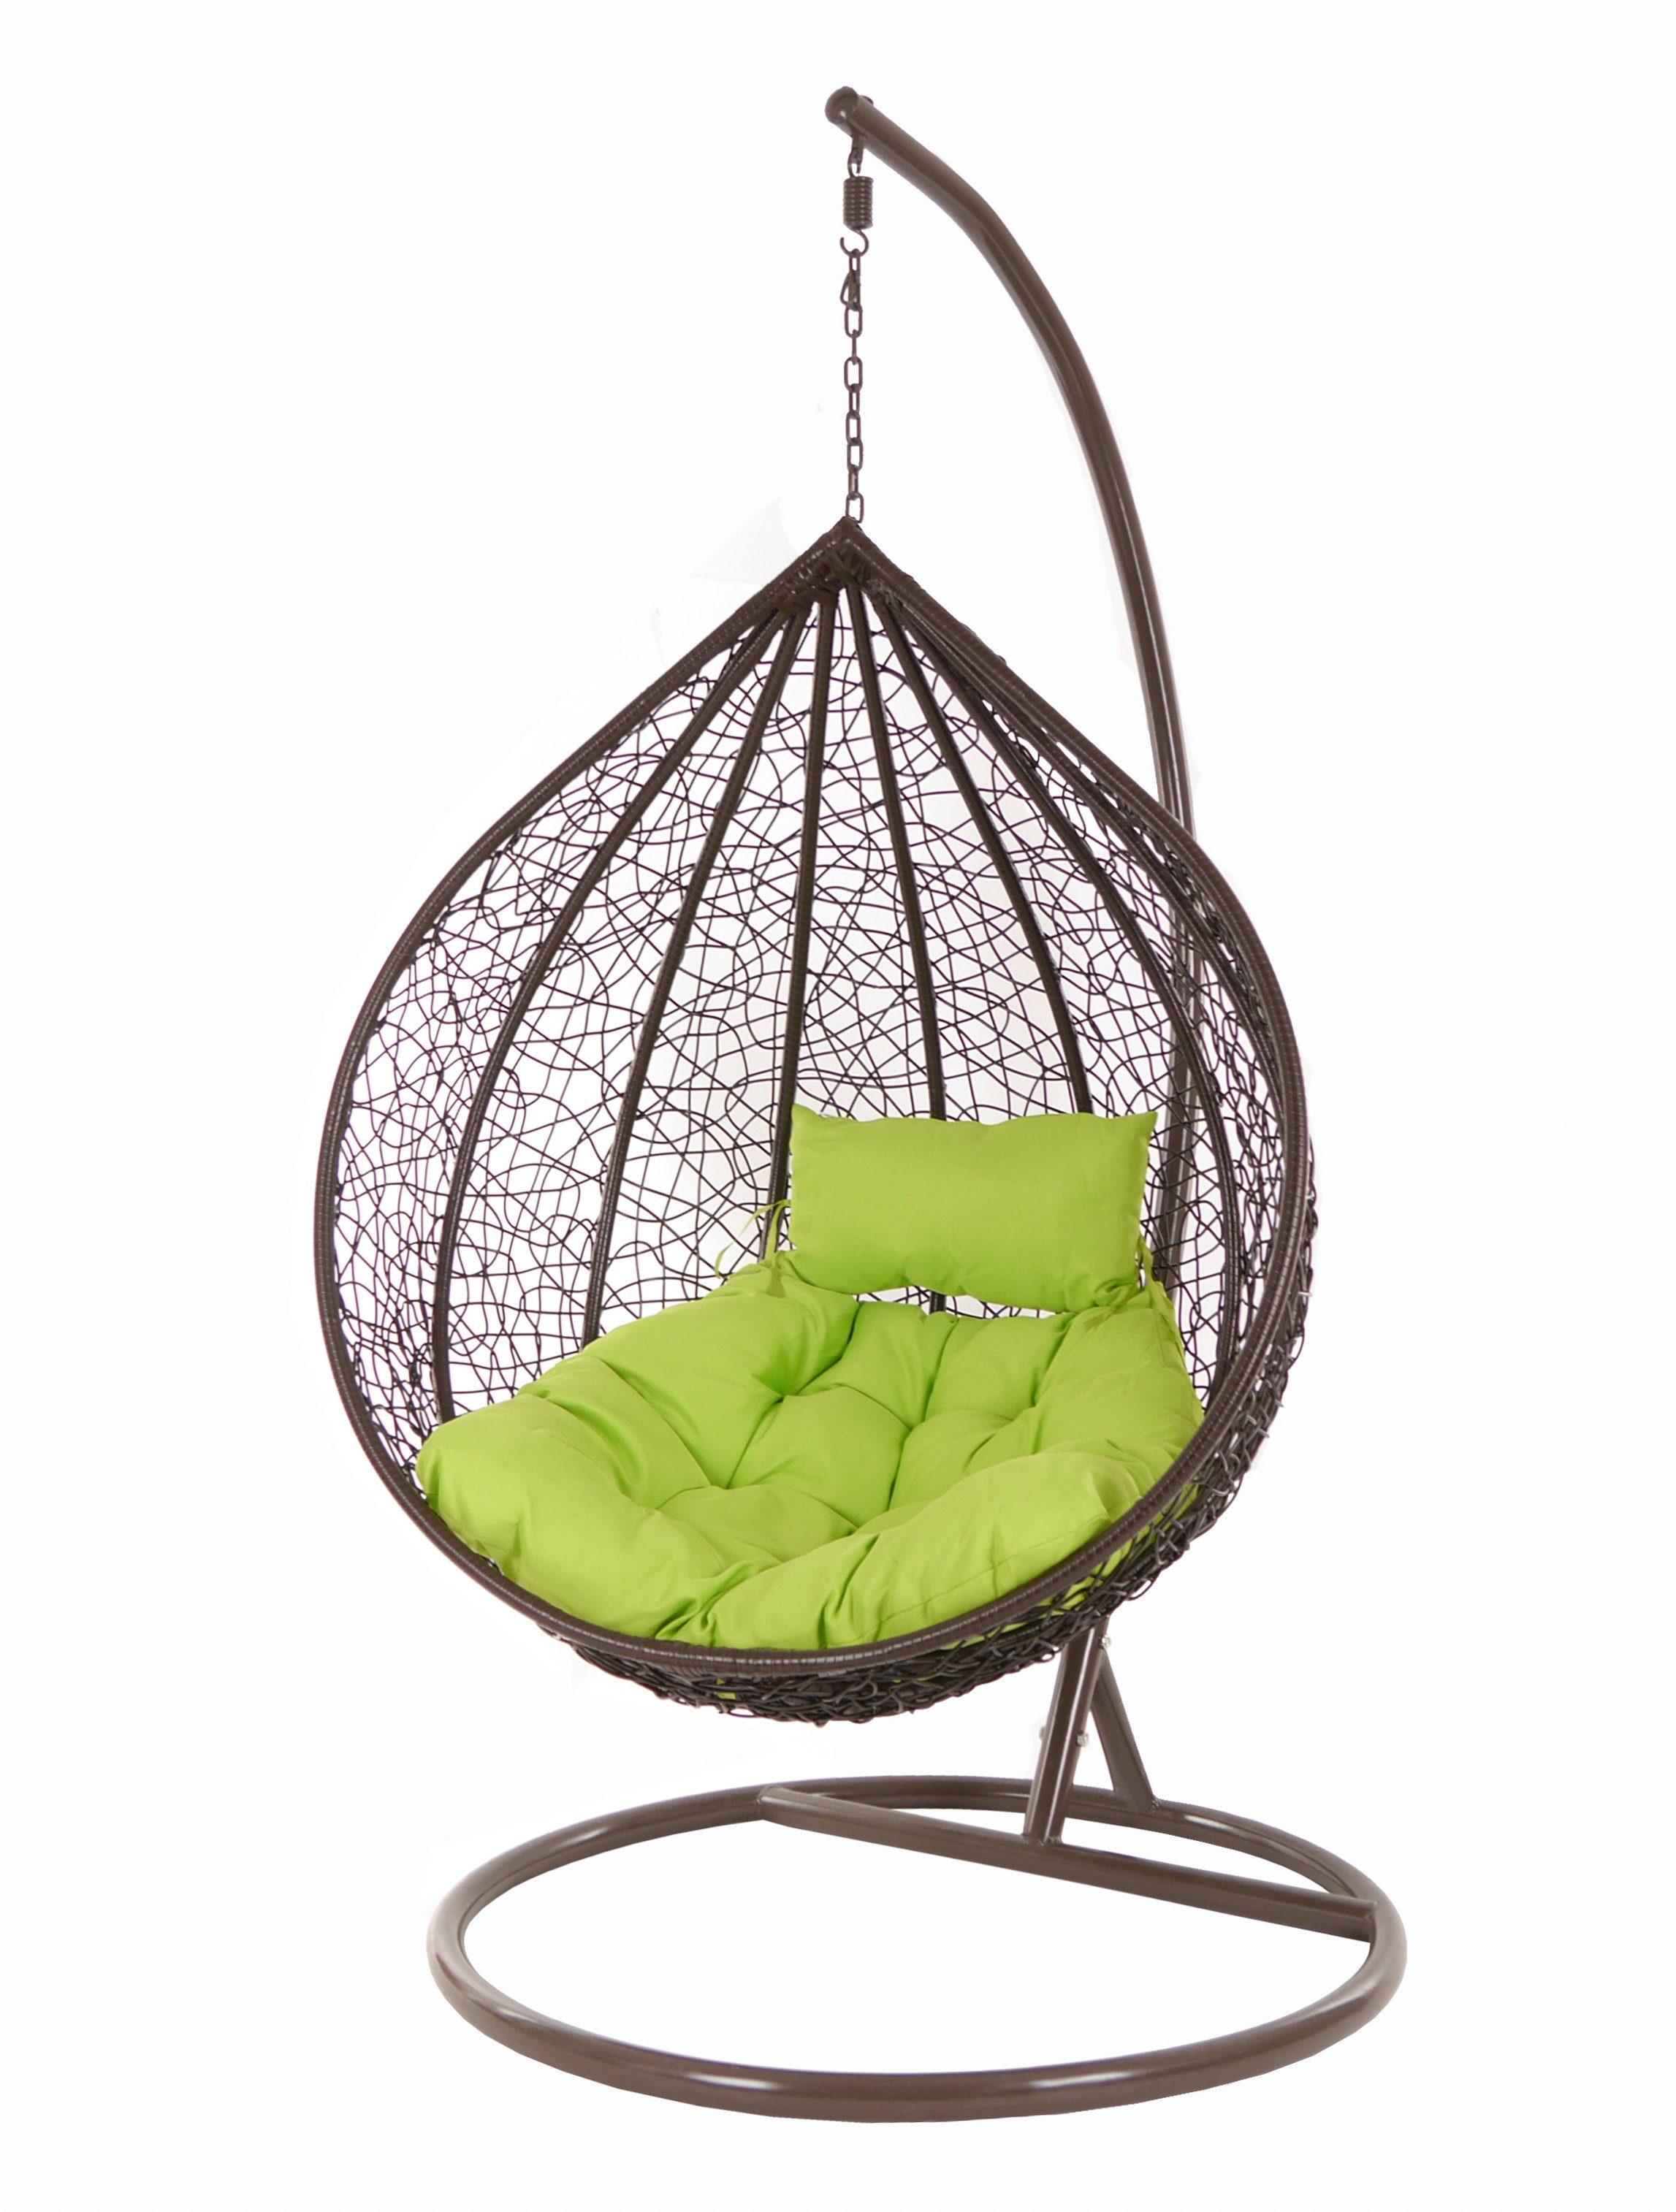 KIDEO Hängesessel Hängesessel MANACOR darkbrown, Hängesessel Kissen, Gestell green) Loungemöbel apfelgrün dunkelbraun, Swing und Chair, mit apple (6068